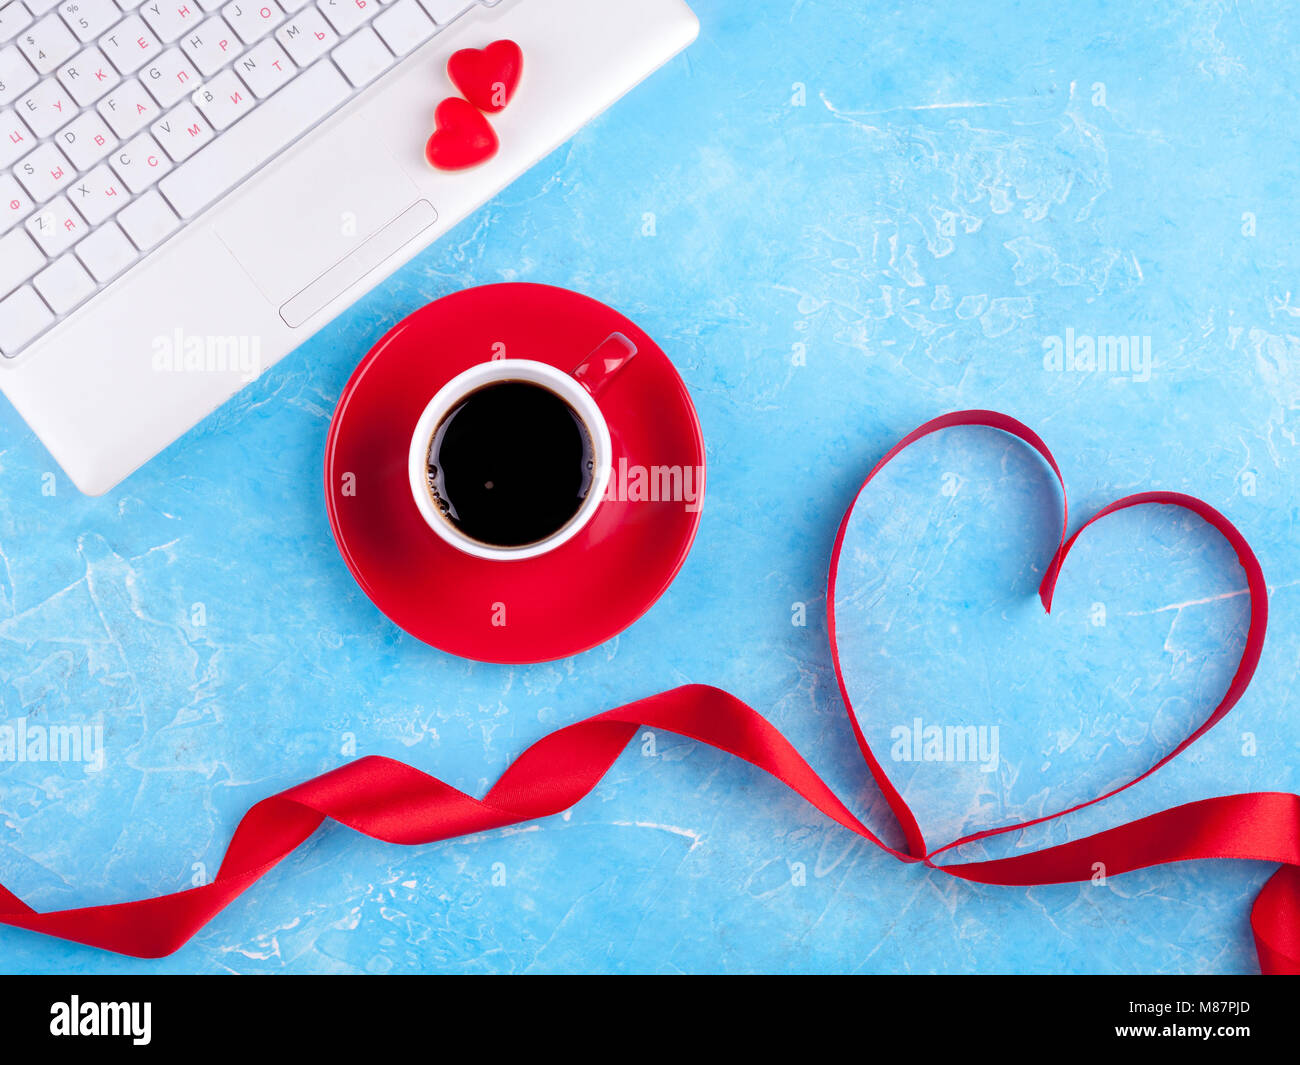 Làm sao để giữ được sự lãng mạn và nồng nhiệt của tình yêu trong giao diện laptop của bạn? Hãy cập nhật ngay hình nền RED HEART đầy màu sắc và lãng mạn này để được trải nghiệm một không gian đam mê và tình yêu.